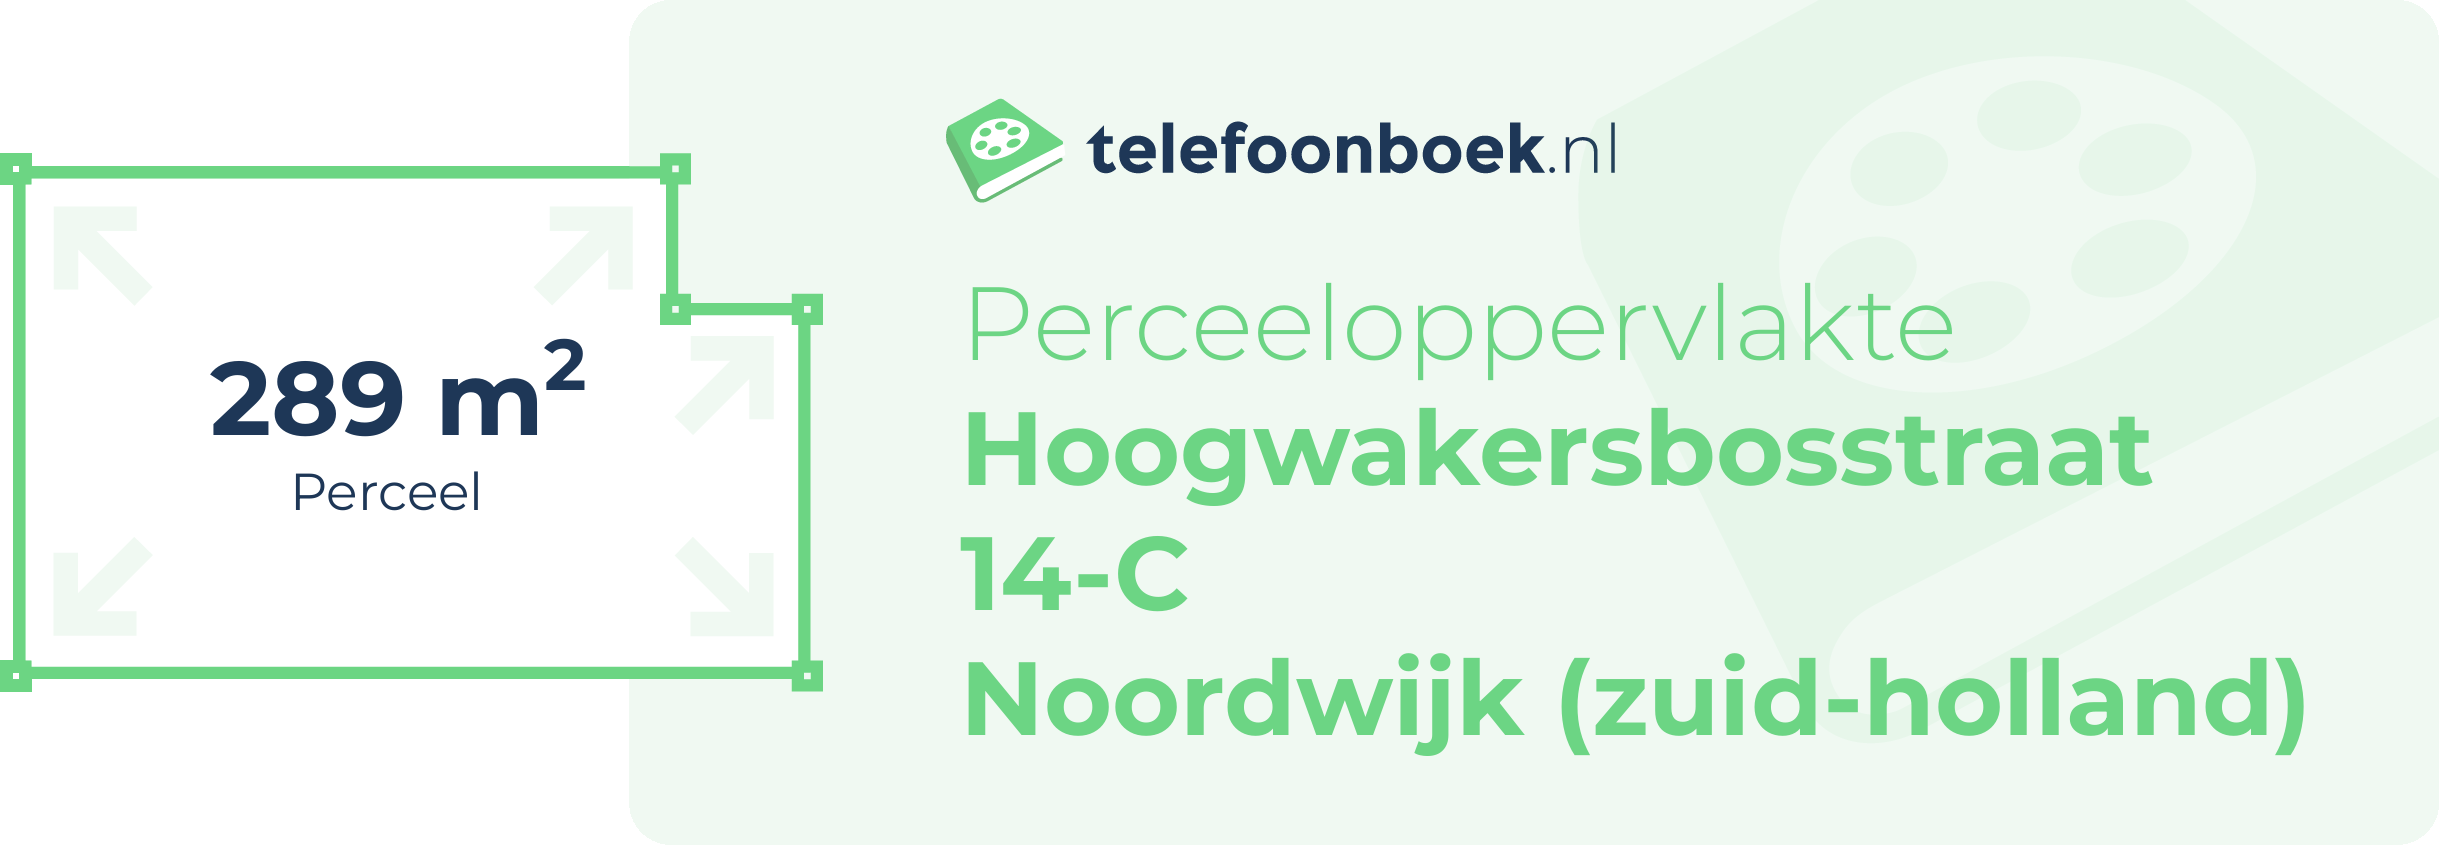 Perceeloppervlakte Hoogwakersbosstraat 14-C Noordwijk (Zuid-Holland)